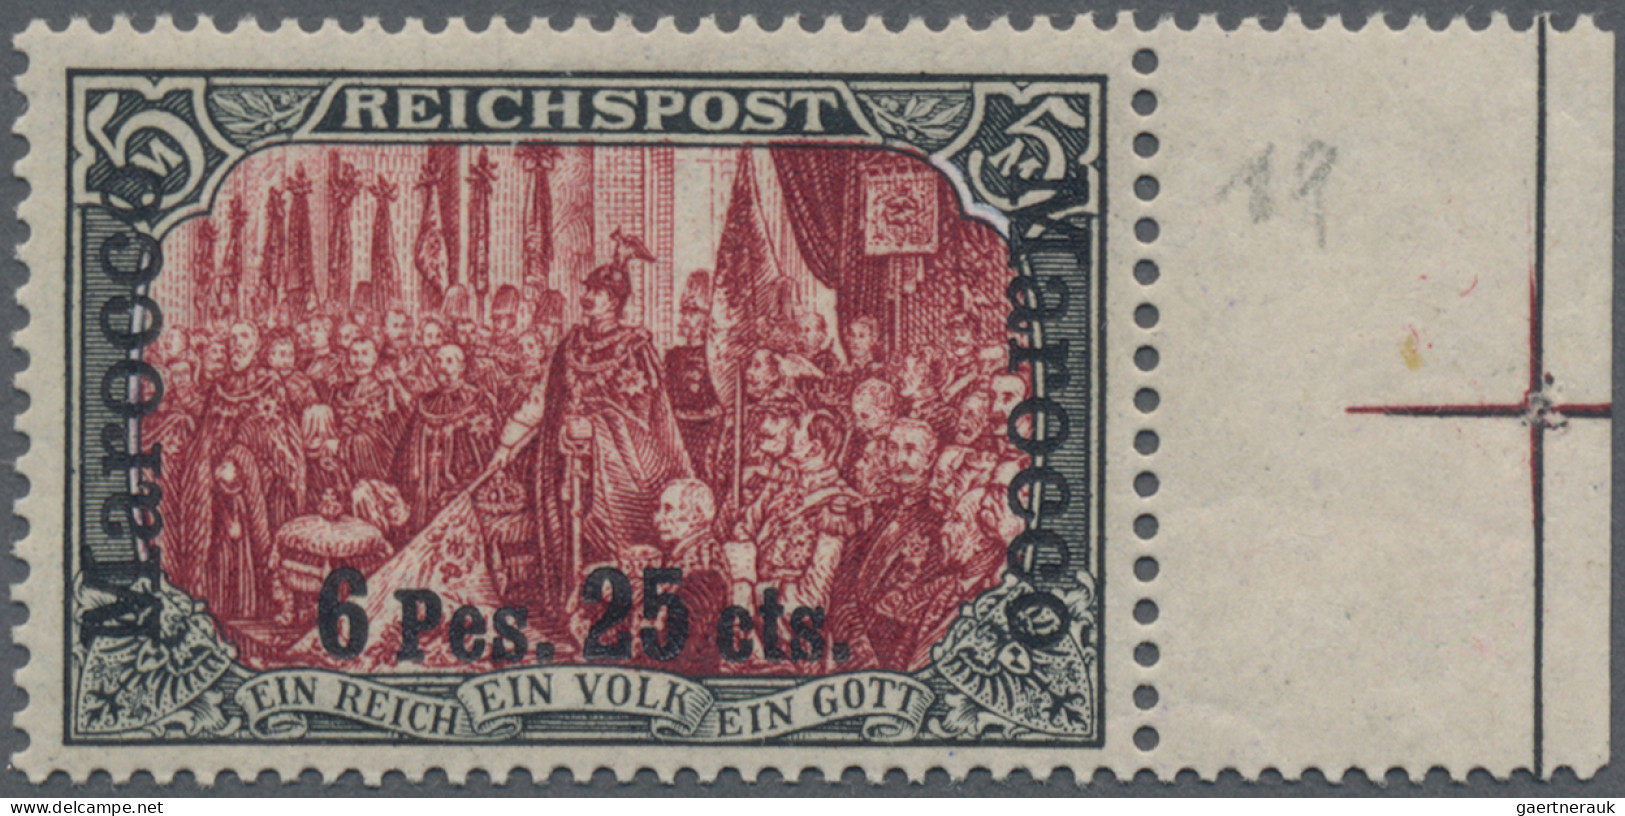 Deutsche Post In Marokko: 1900, 6 P 25 C Auf 5 Mark, Sog. Dünner Aufdruck, Type - Morocco (offices)